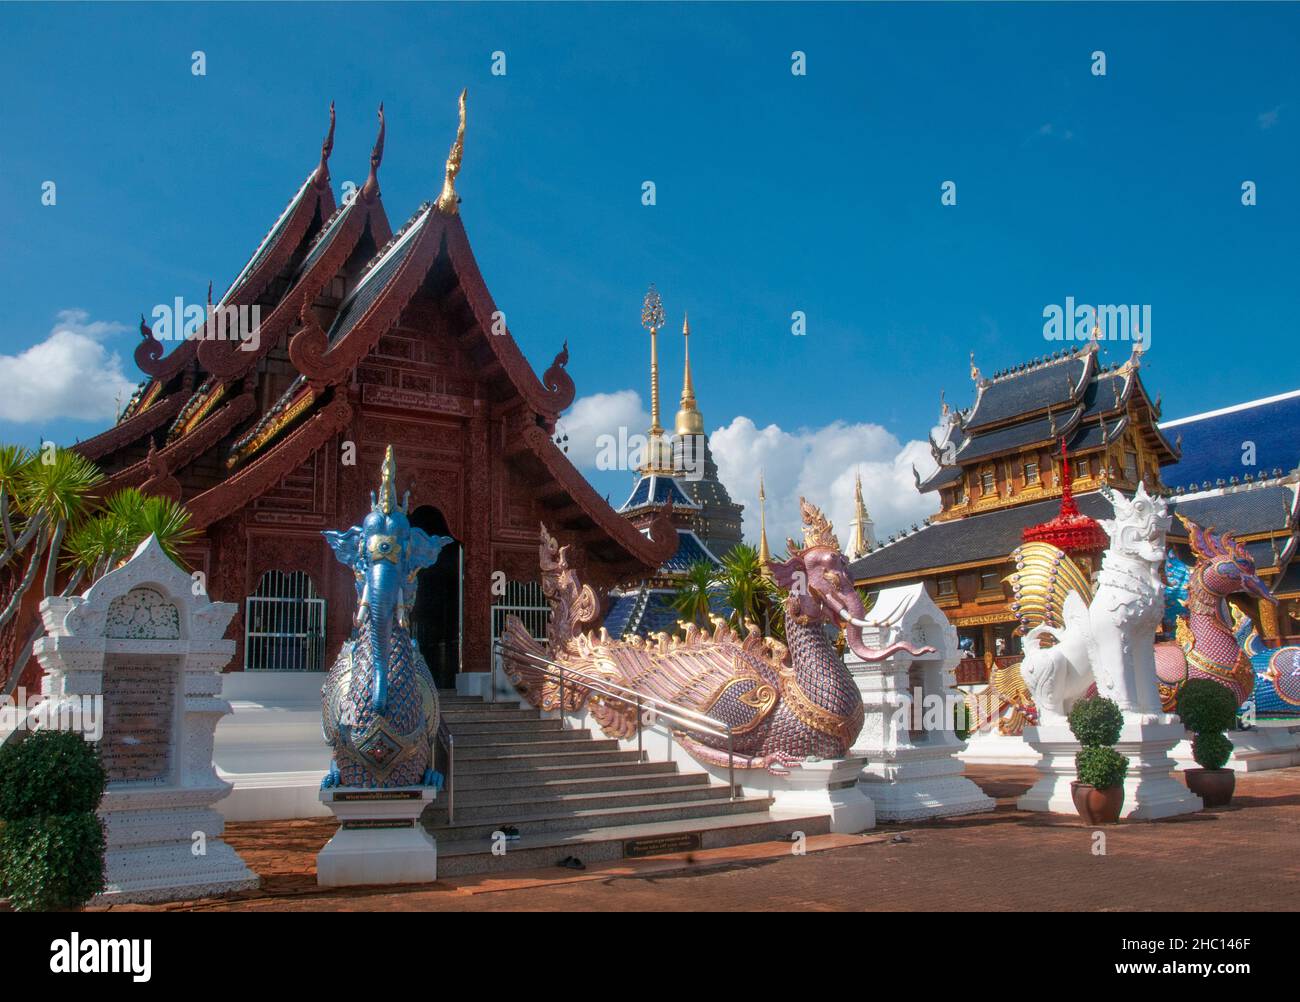 Thailand: Hatsadiling (halb Vogel, halb Elefant) in Wat Ban Den, Ban Inthakin, Mae Taeng District, Chiang Mai. Wat Ban Den, auch bekannt als Wat Bandensali Si Mueang Kaen, ist ein großer buddhistischer Tempelkomplex nördlich der Stadt Chiang Mai im Norden Thailands. Stockfoto